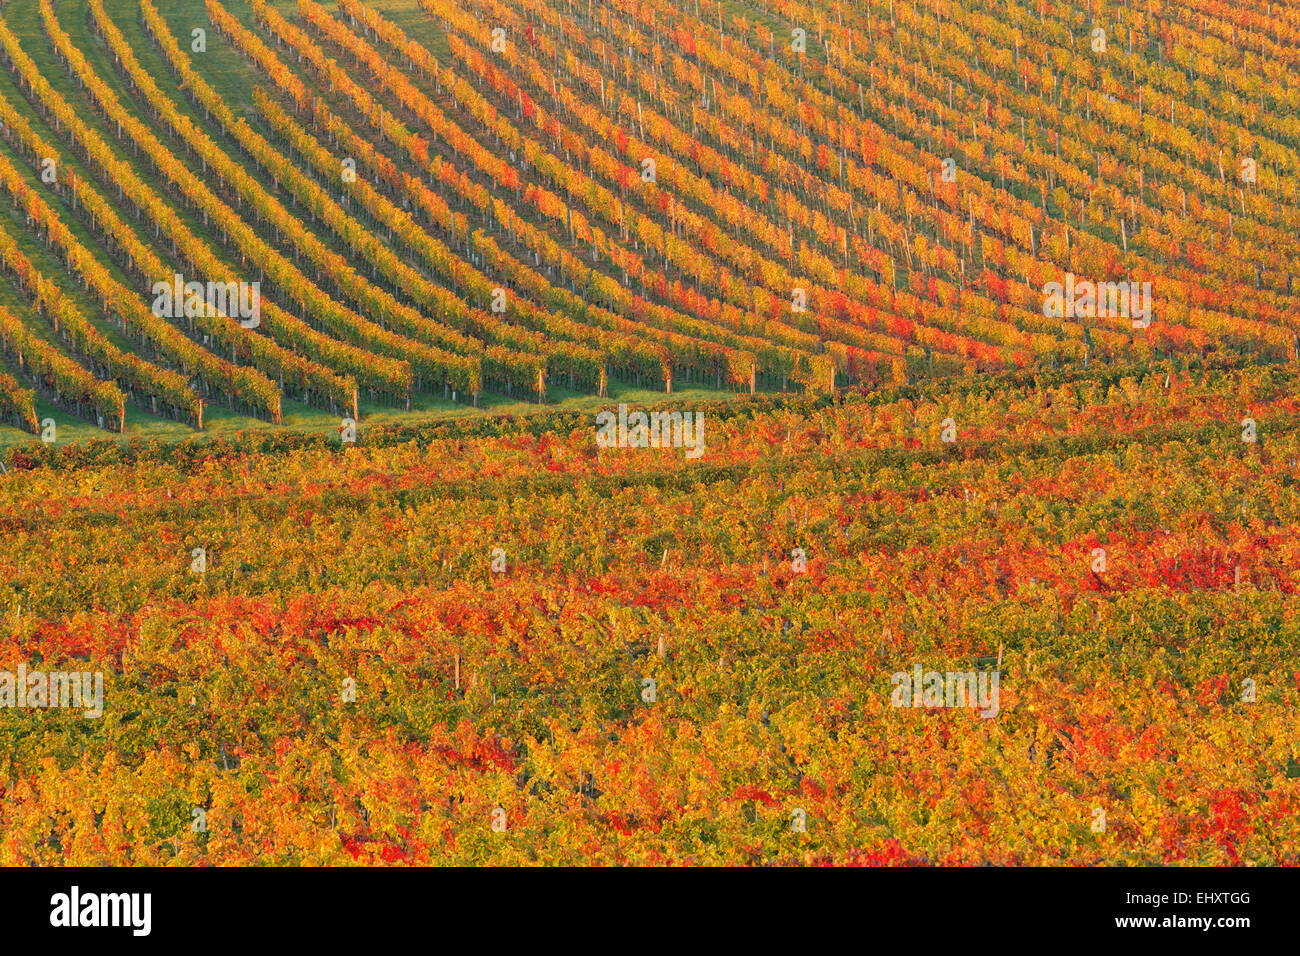 Austria, Burgenland, Oberpullendorf District, Blaufraenkischland, Neckenmarkt, vineyard in autumn Stock Photo